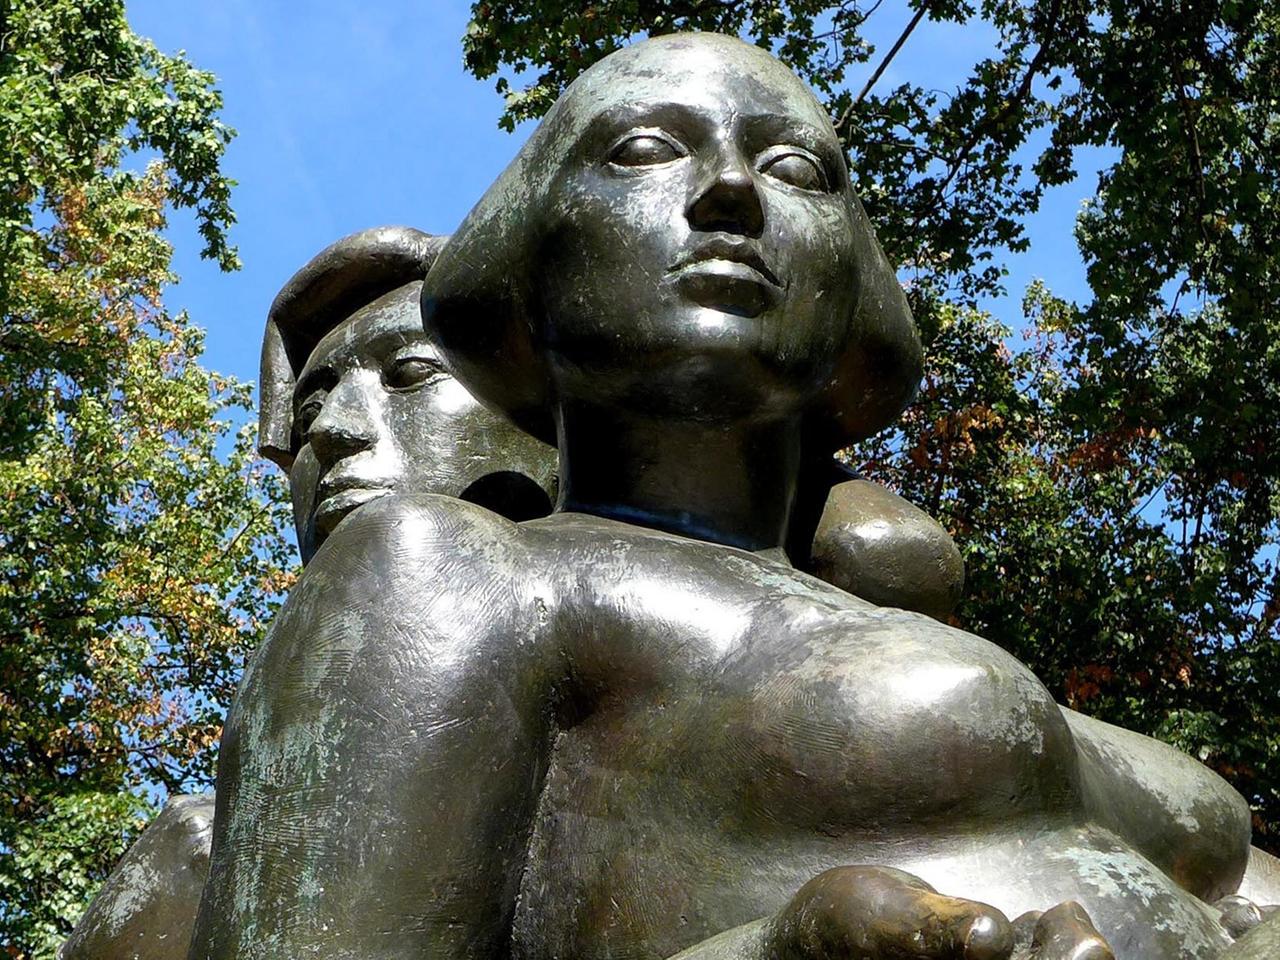 Bettina und Achim von Arnim, Bronzeskulptur des Berliner Bildhauers Michael Klein auf dem Arnimplatz in Berlin-Prenzlauer Berg.